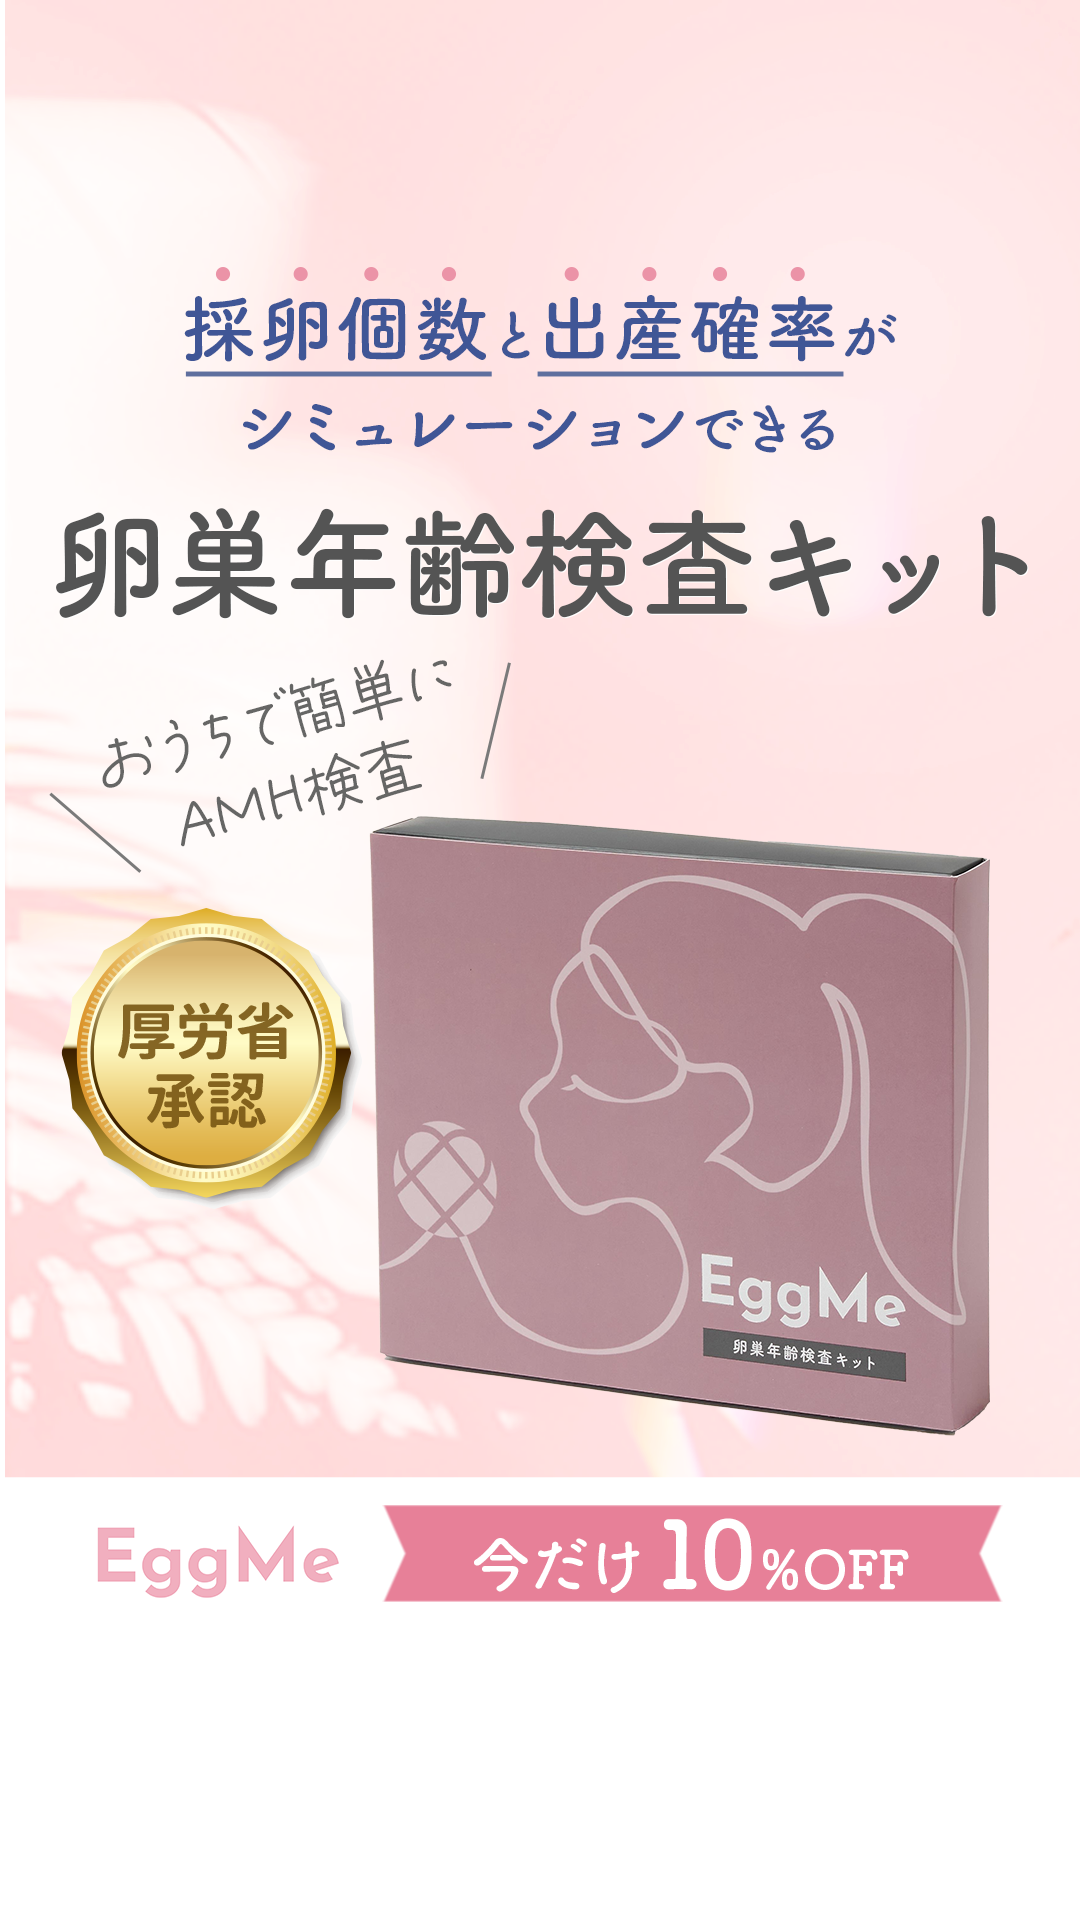 EggMe 卵巣年齢検査キット